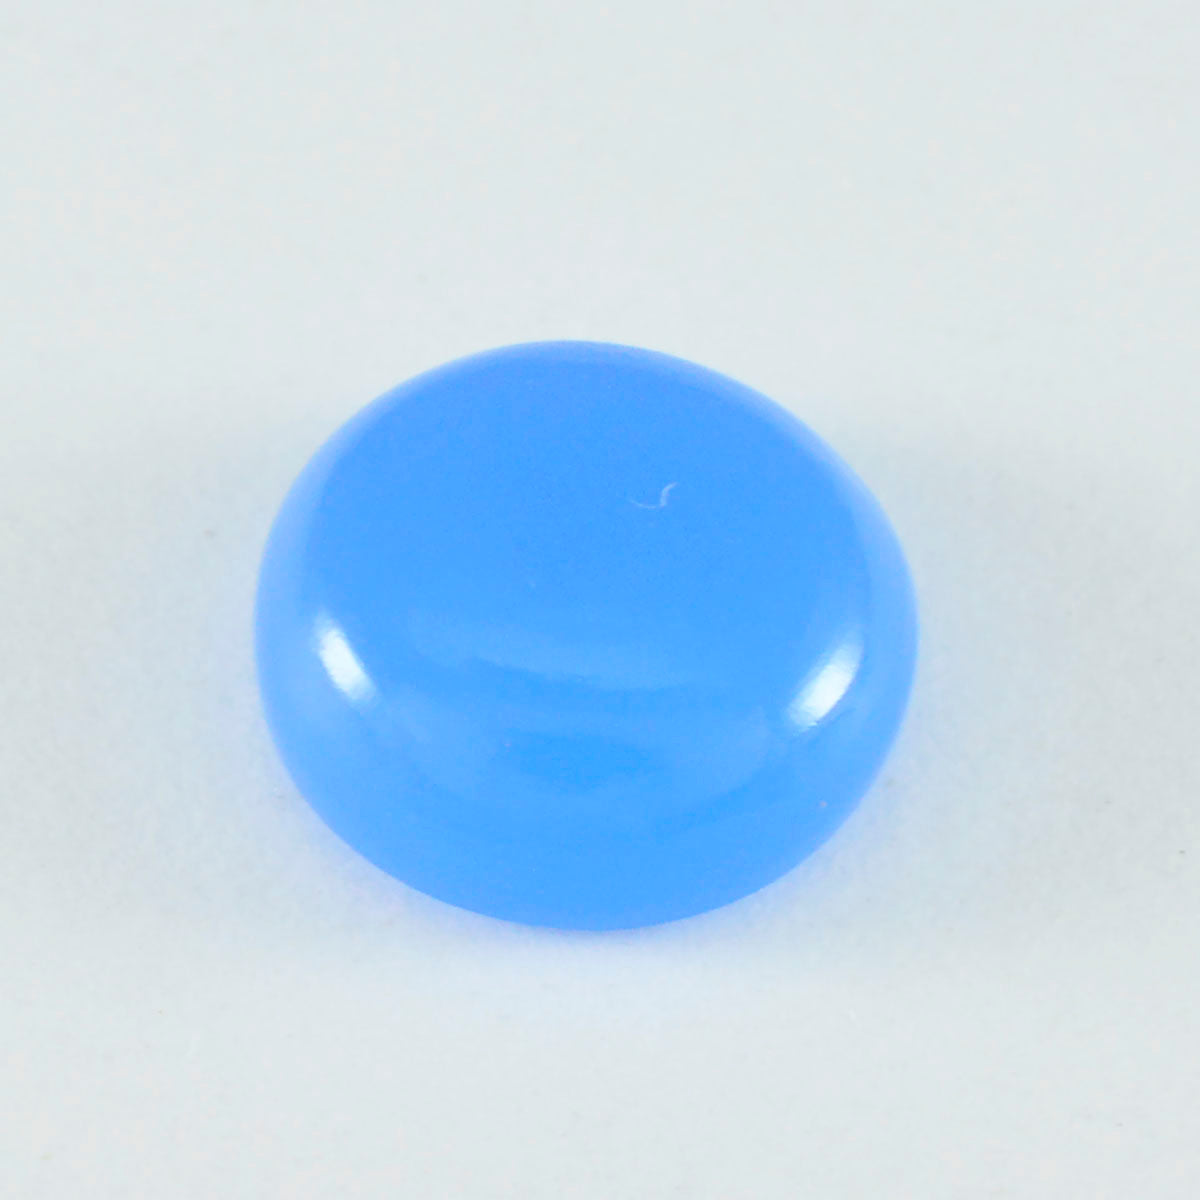 Riyogems 1 pc cabochon calcédoine bleue 10x10 mm forme ronde jolie qualité pierres précieuses en vrac